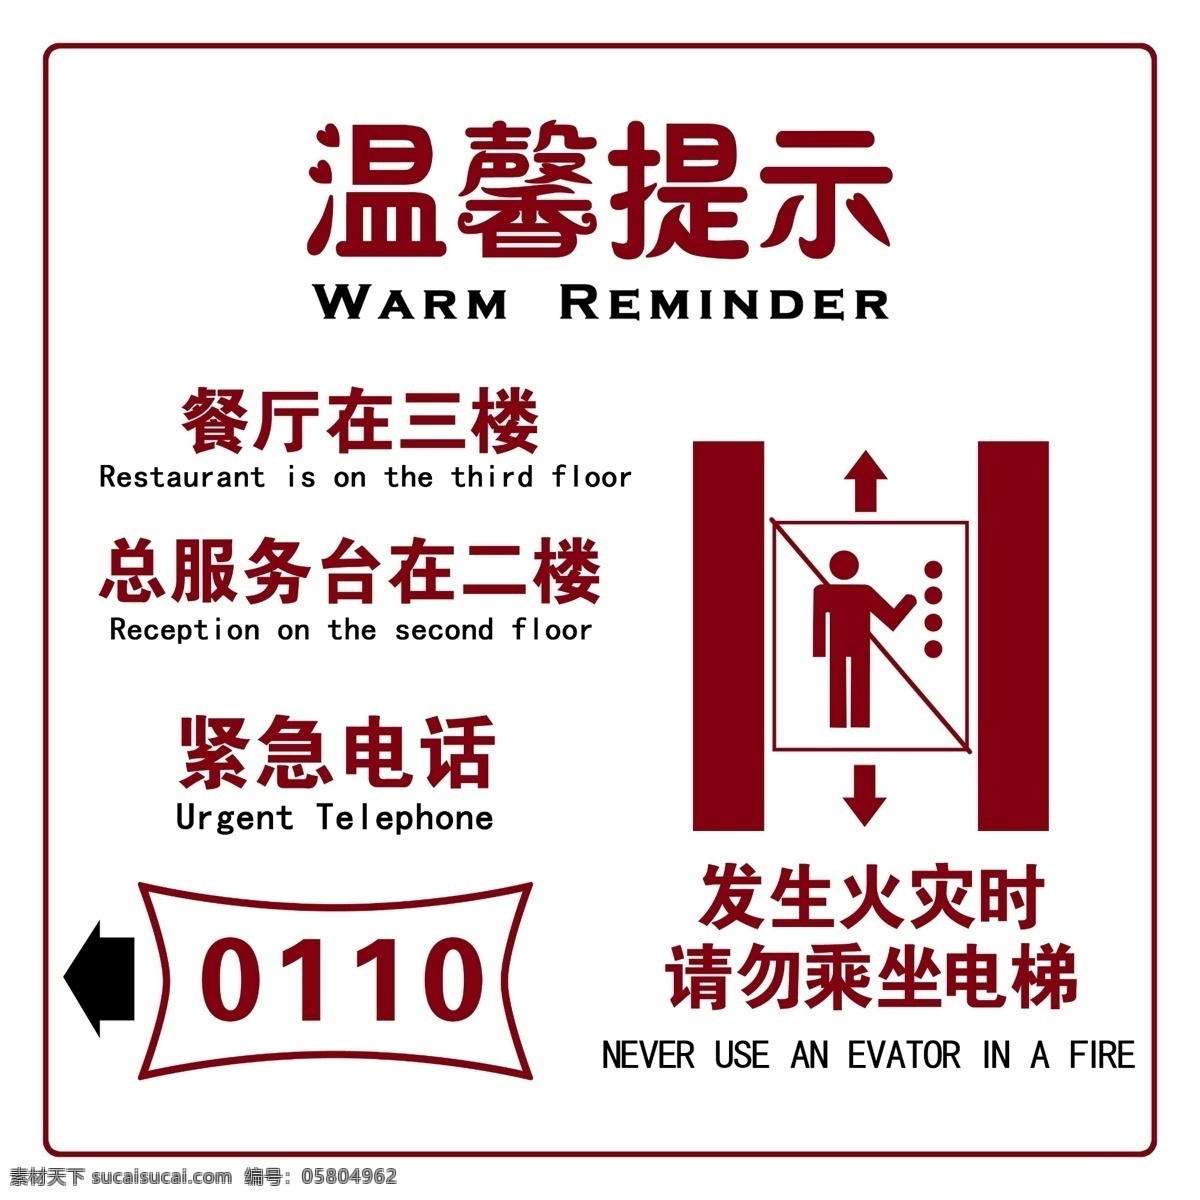 温馨提示 电梯间 双色板雕刻 褐色 火灾 紧急电话 指示牌 引导牌 其他模版 广告设计模板 源文件